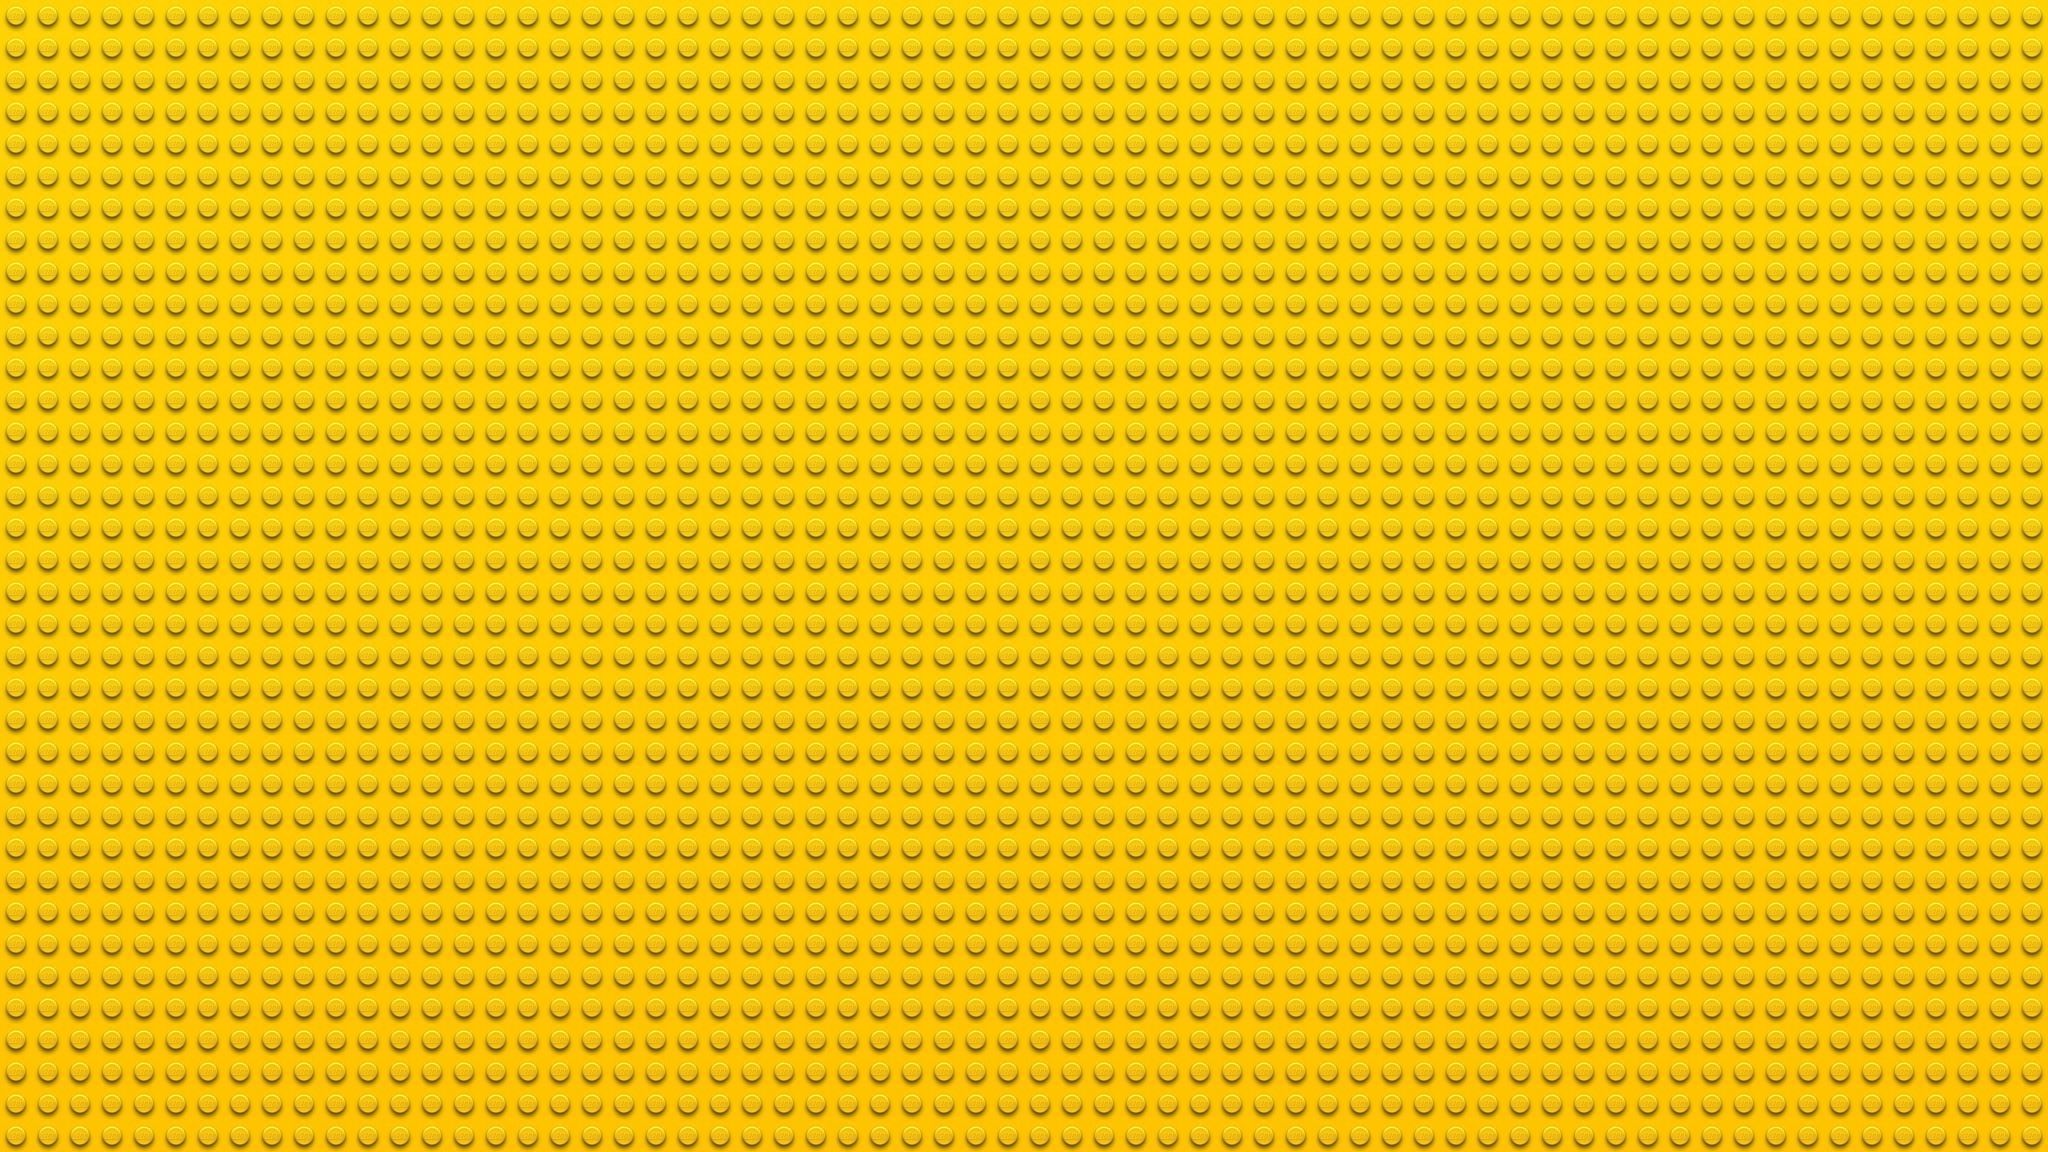 Lego Backgrounds